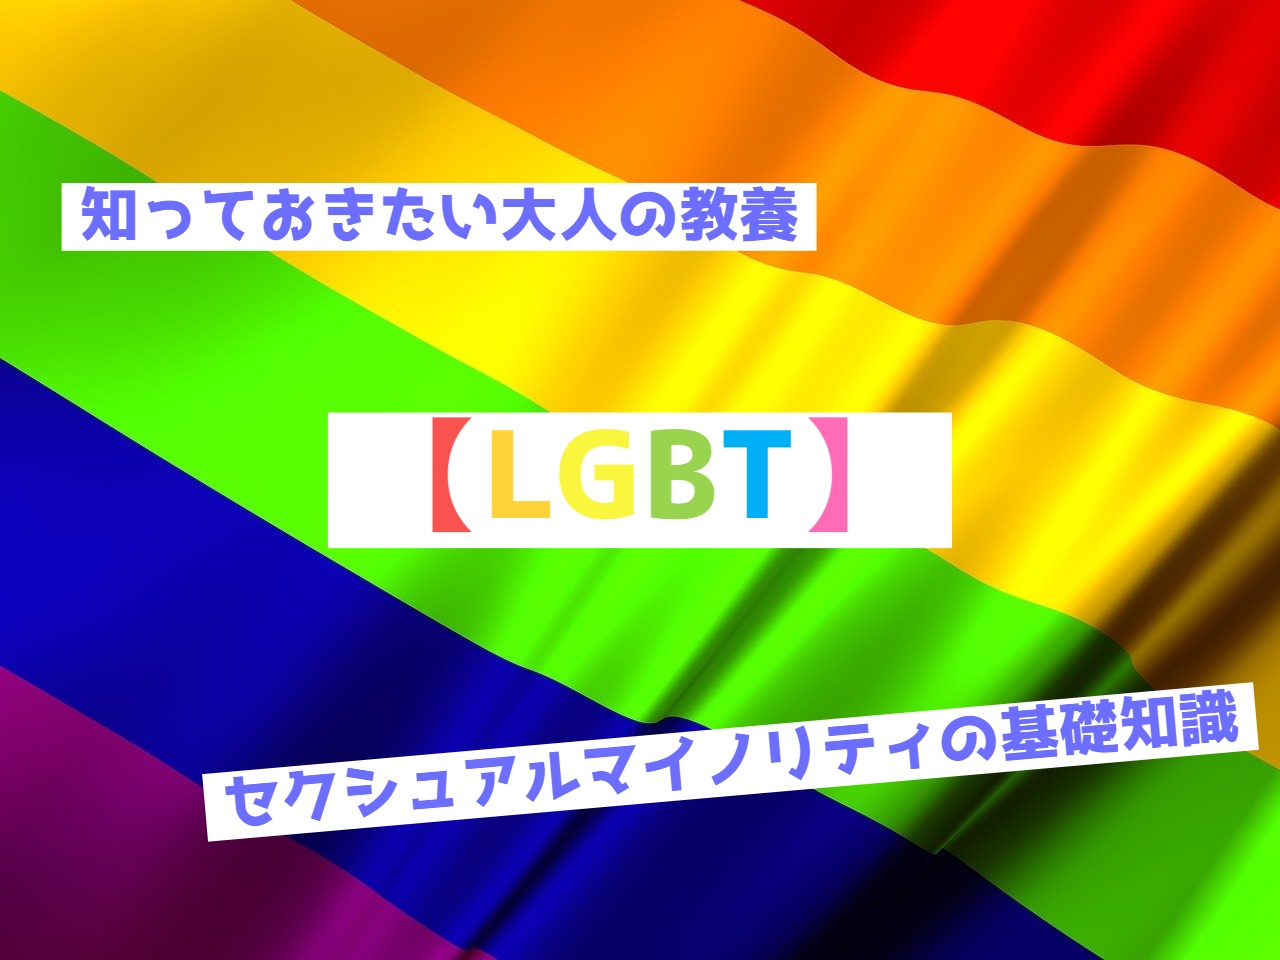 知っておきたい大人の教養【LGBT】セクシャルマイノリティの基礎知識